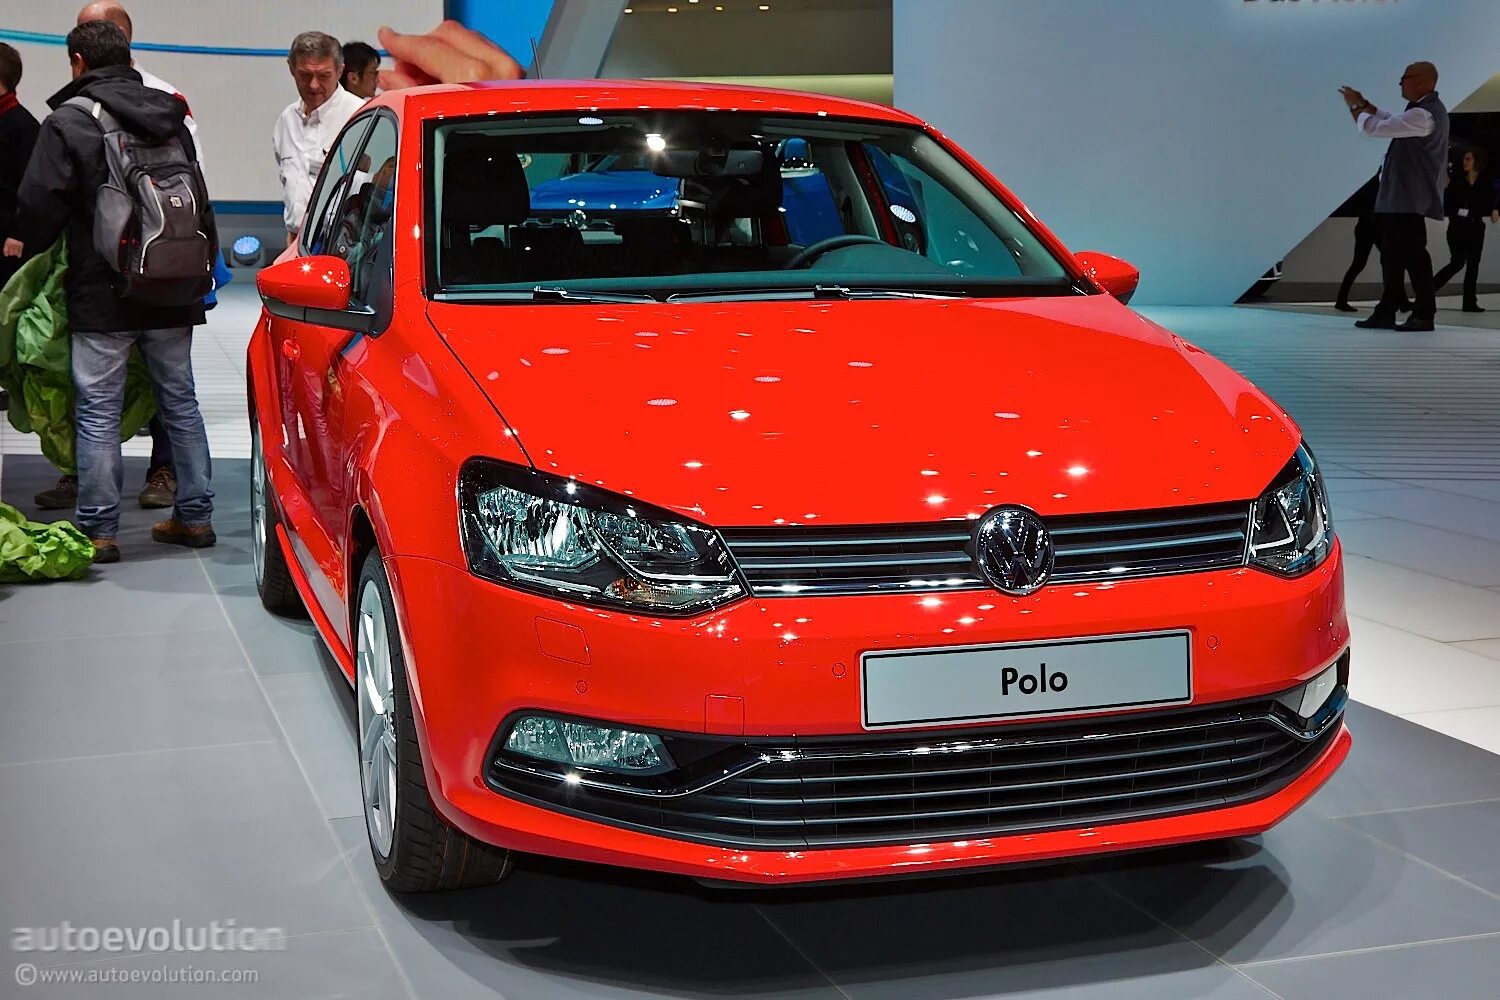 Купить новый фольксваген поло у официального дилера. Volkswagen Polo 2021 красный. Volkswagen Polo красный. Поло красный 2014 Фольксваген. VW Polo 2014 красный.